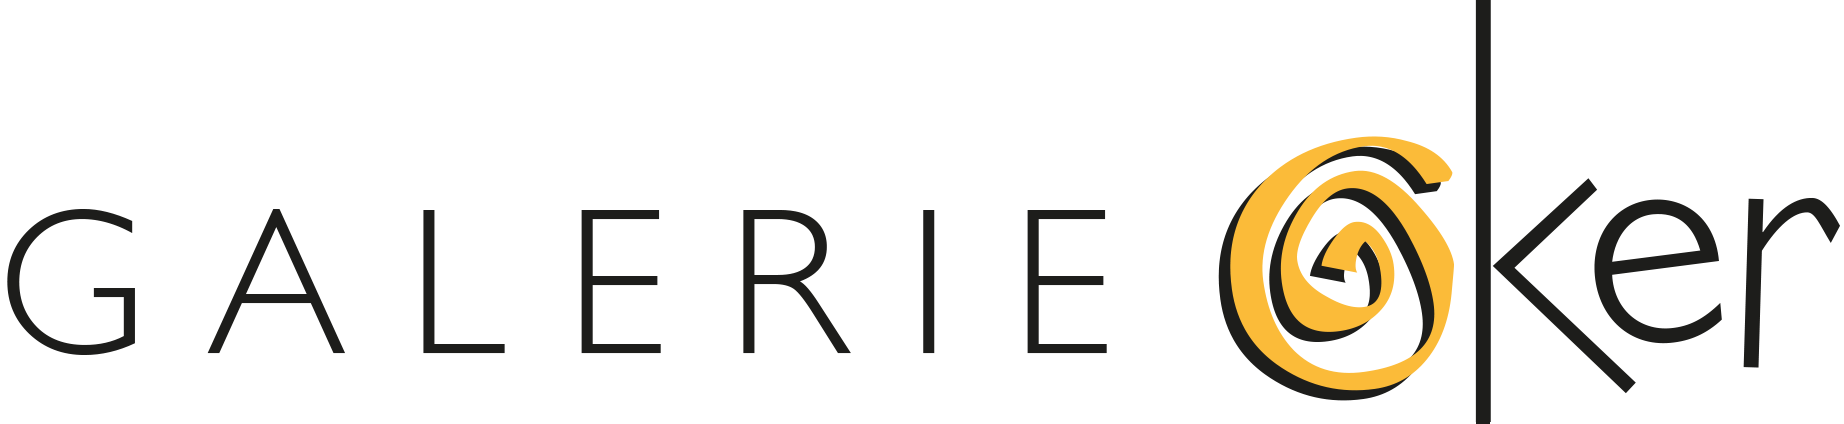 Galerie Oker, groot logo